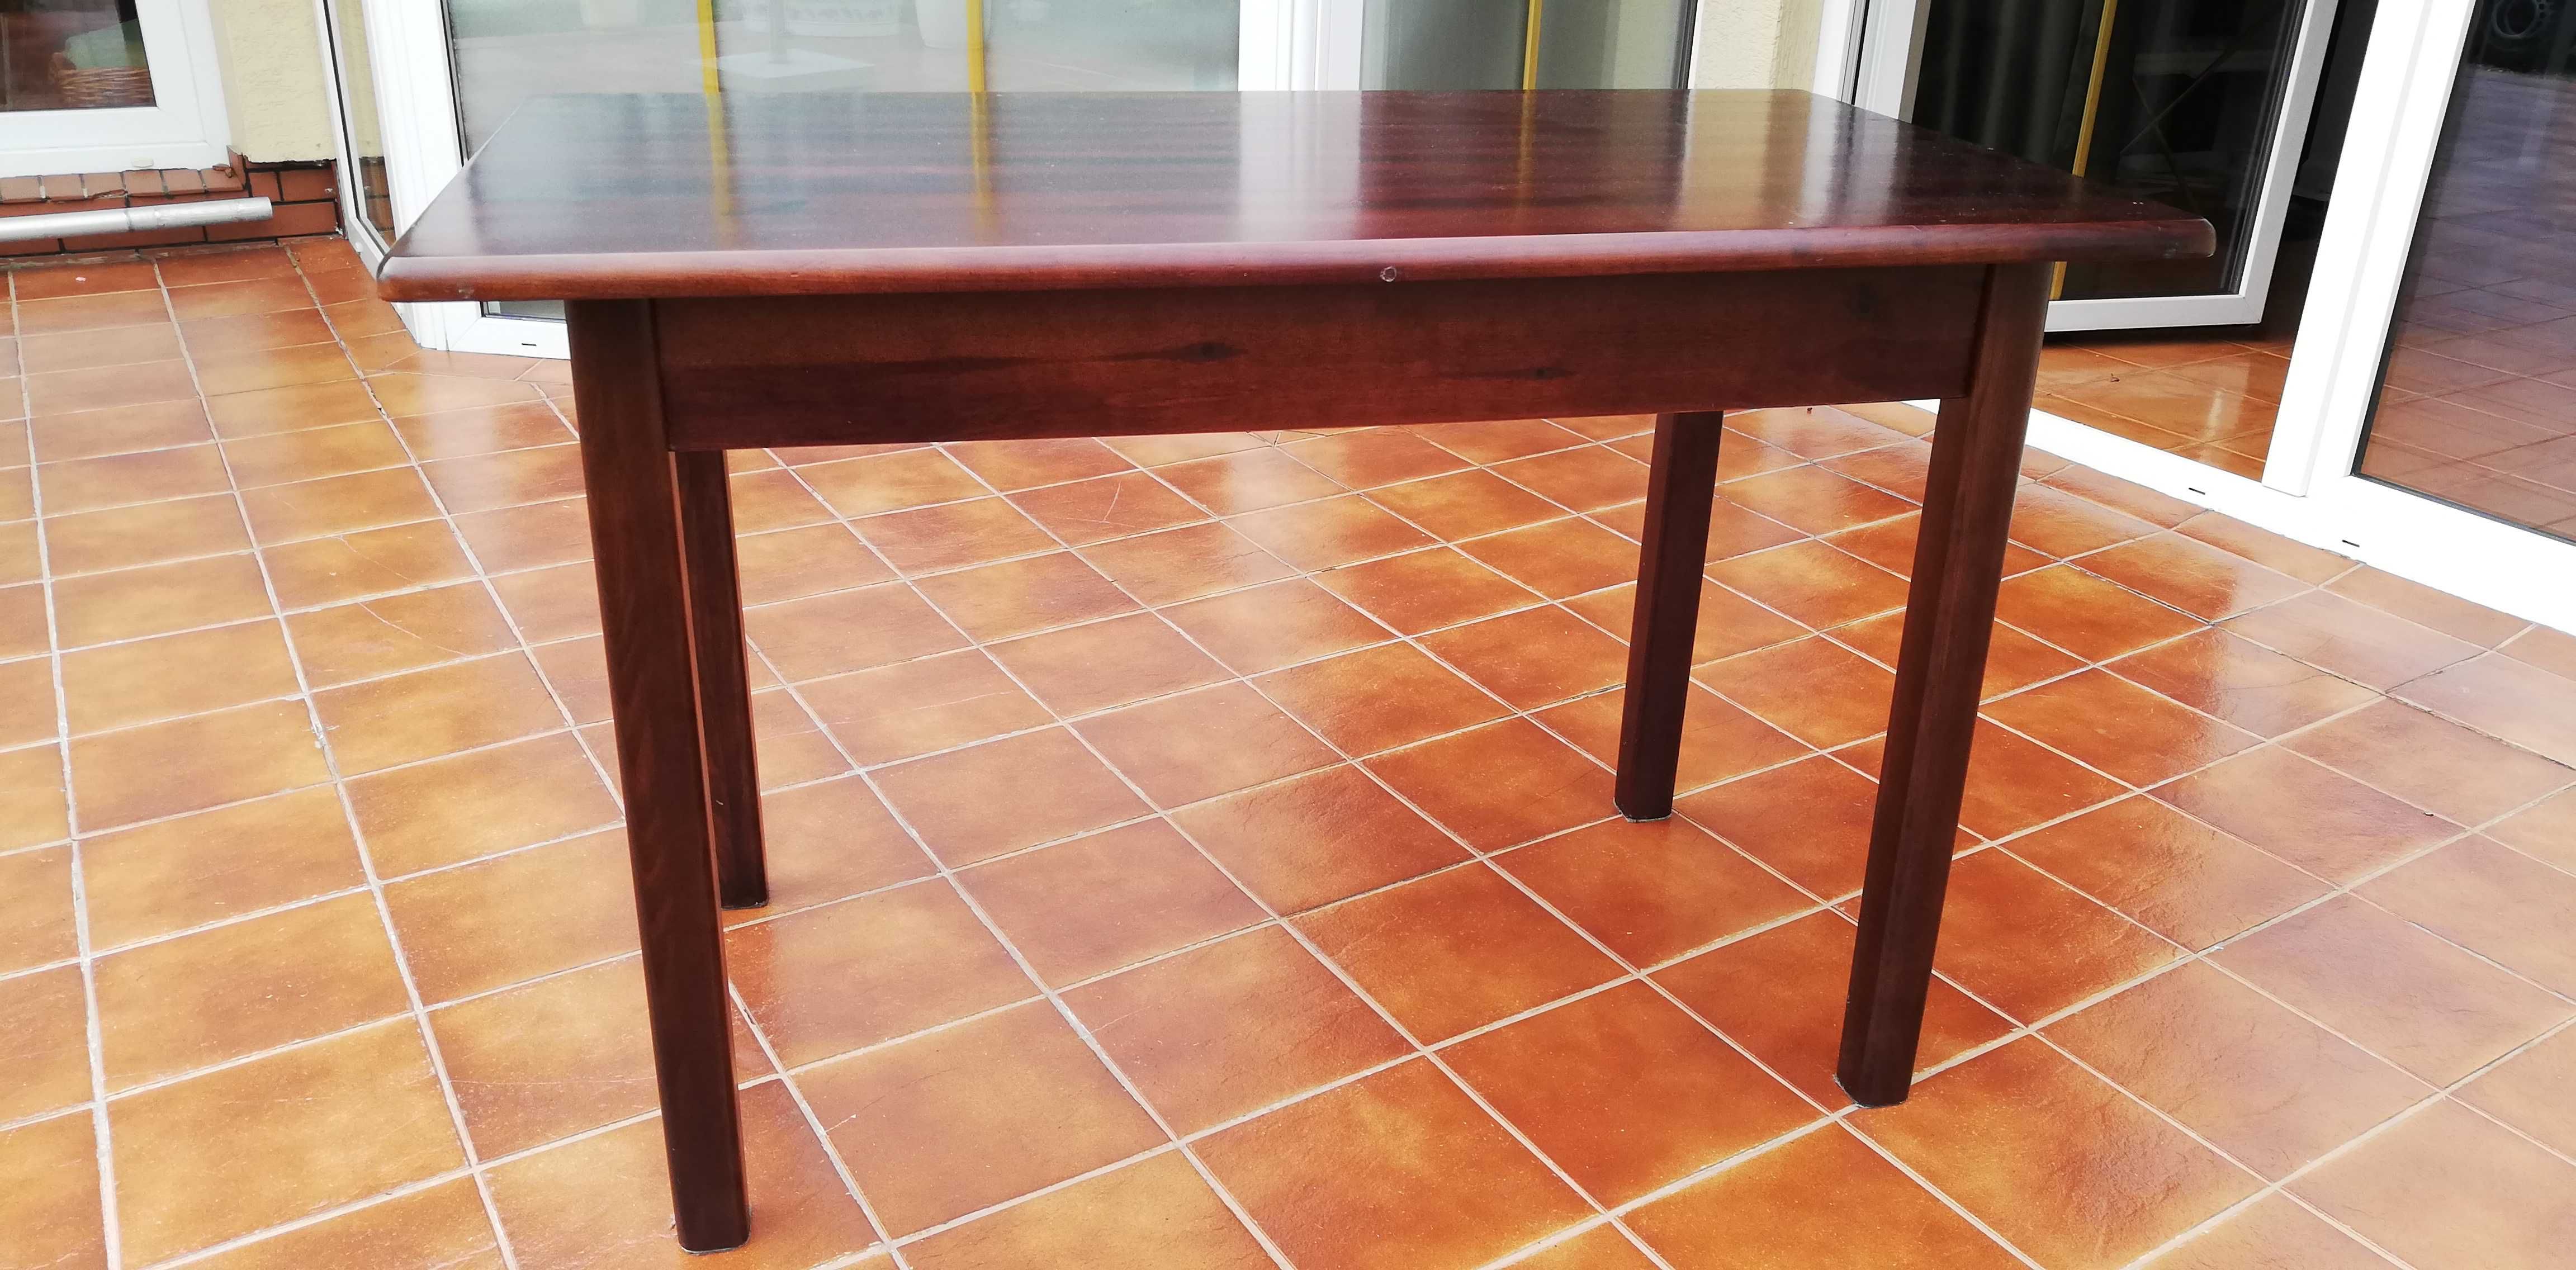 Stół prostokątny drewniany ciemny 4 nogi do salonu kuchni biurko